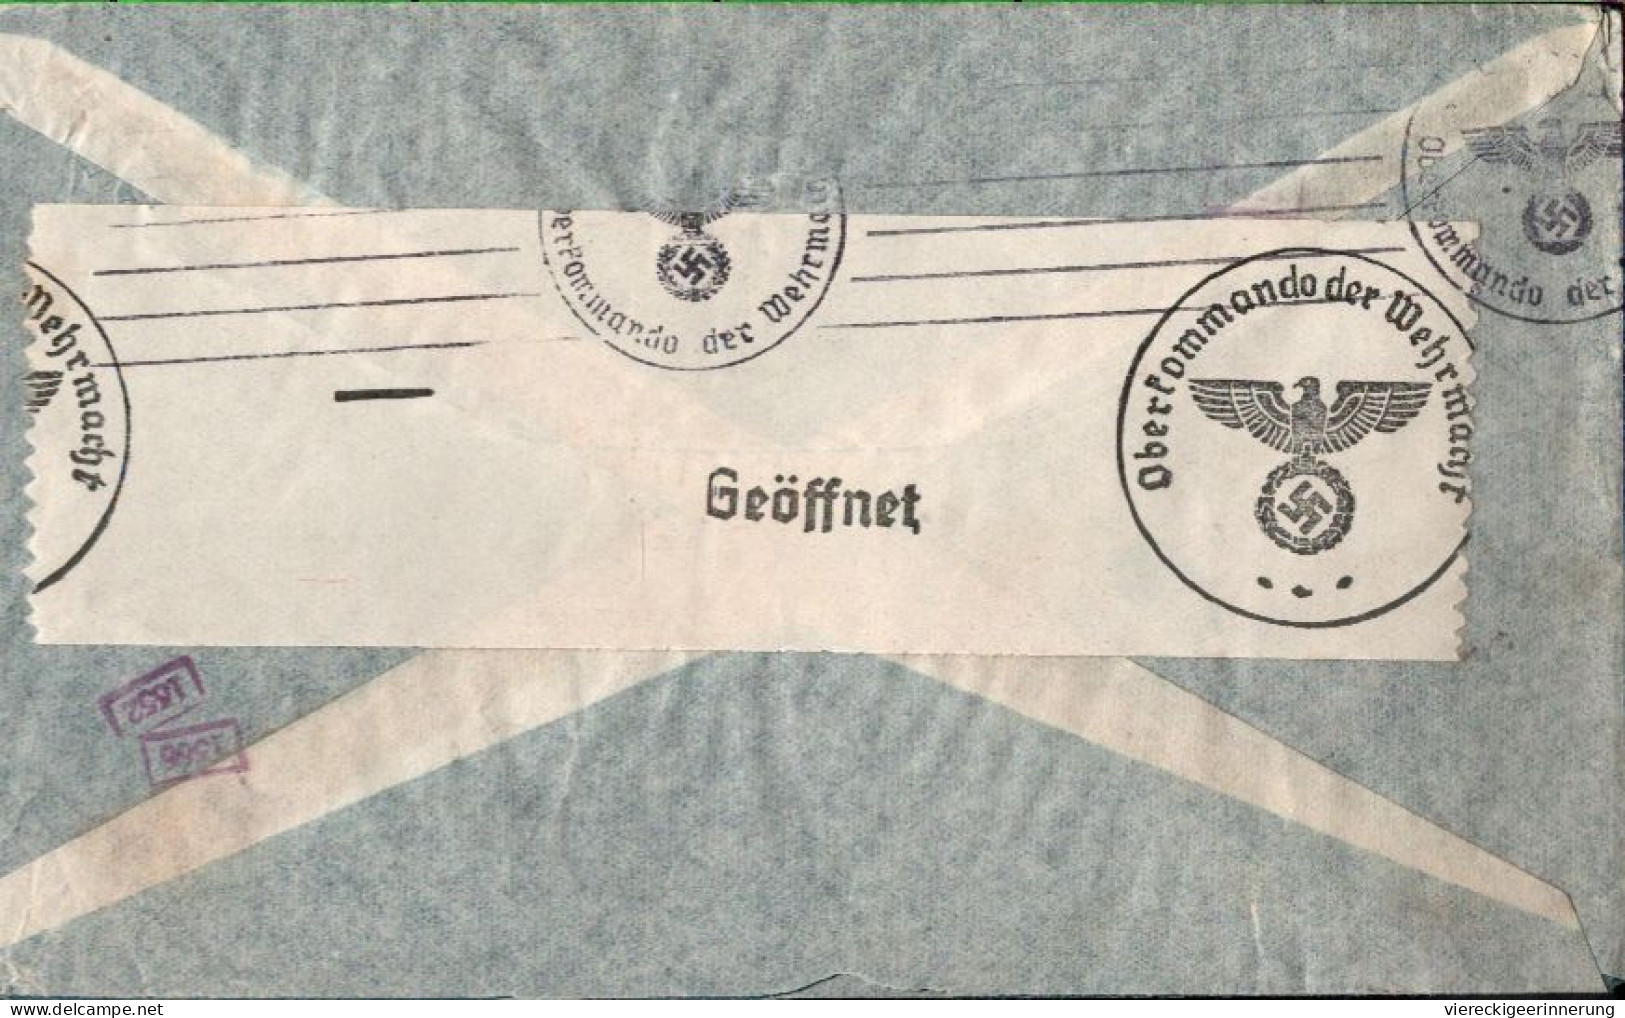 ! Argentinien 1940 Luftpost Brief Aus Buenos Aires Nach Berlin Mit OKW Zensur, Censor Mark, Airmail Via Condor - Storia Postale